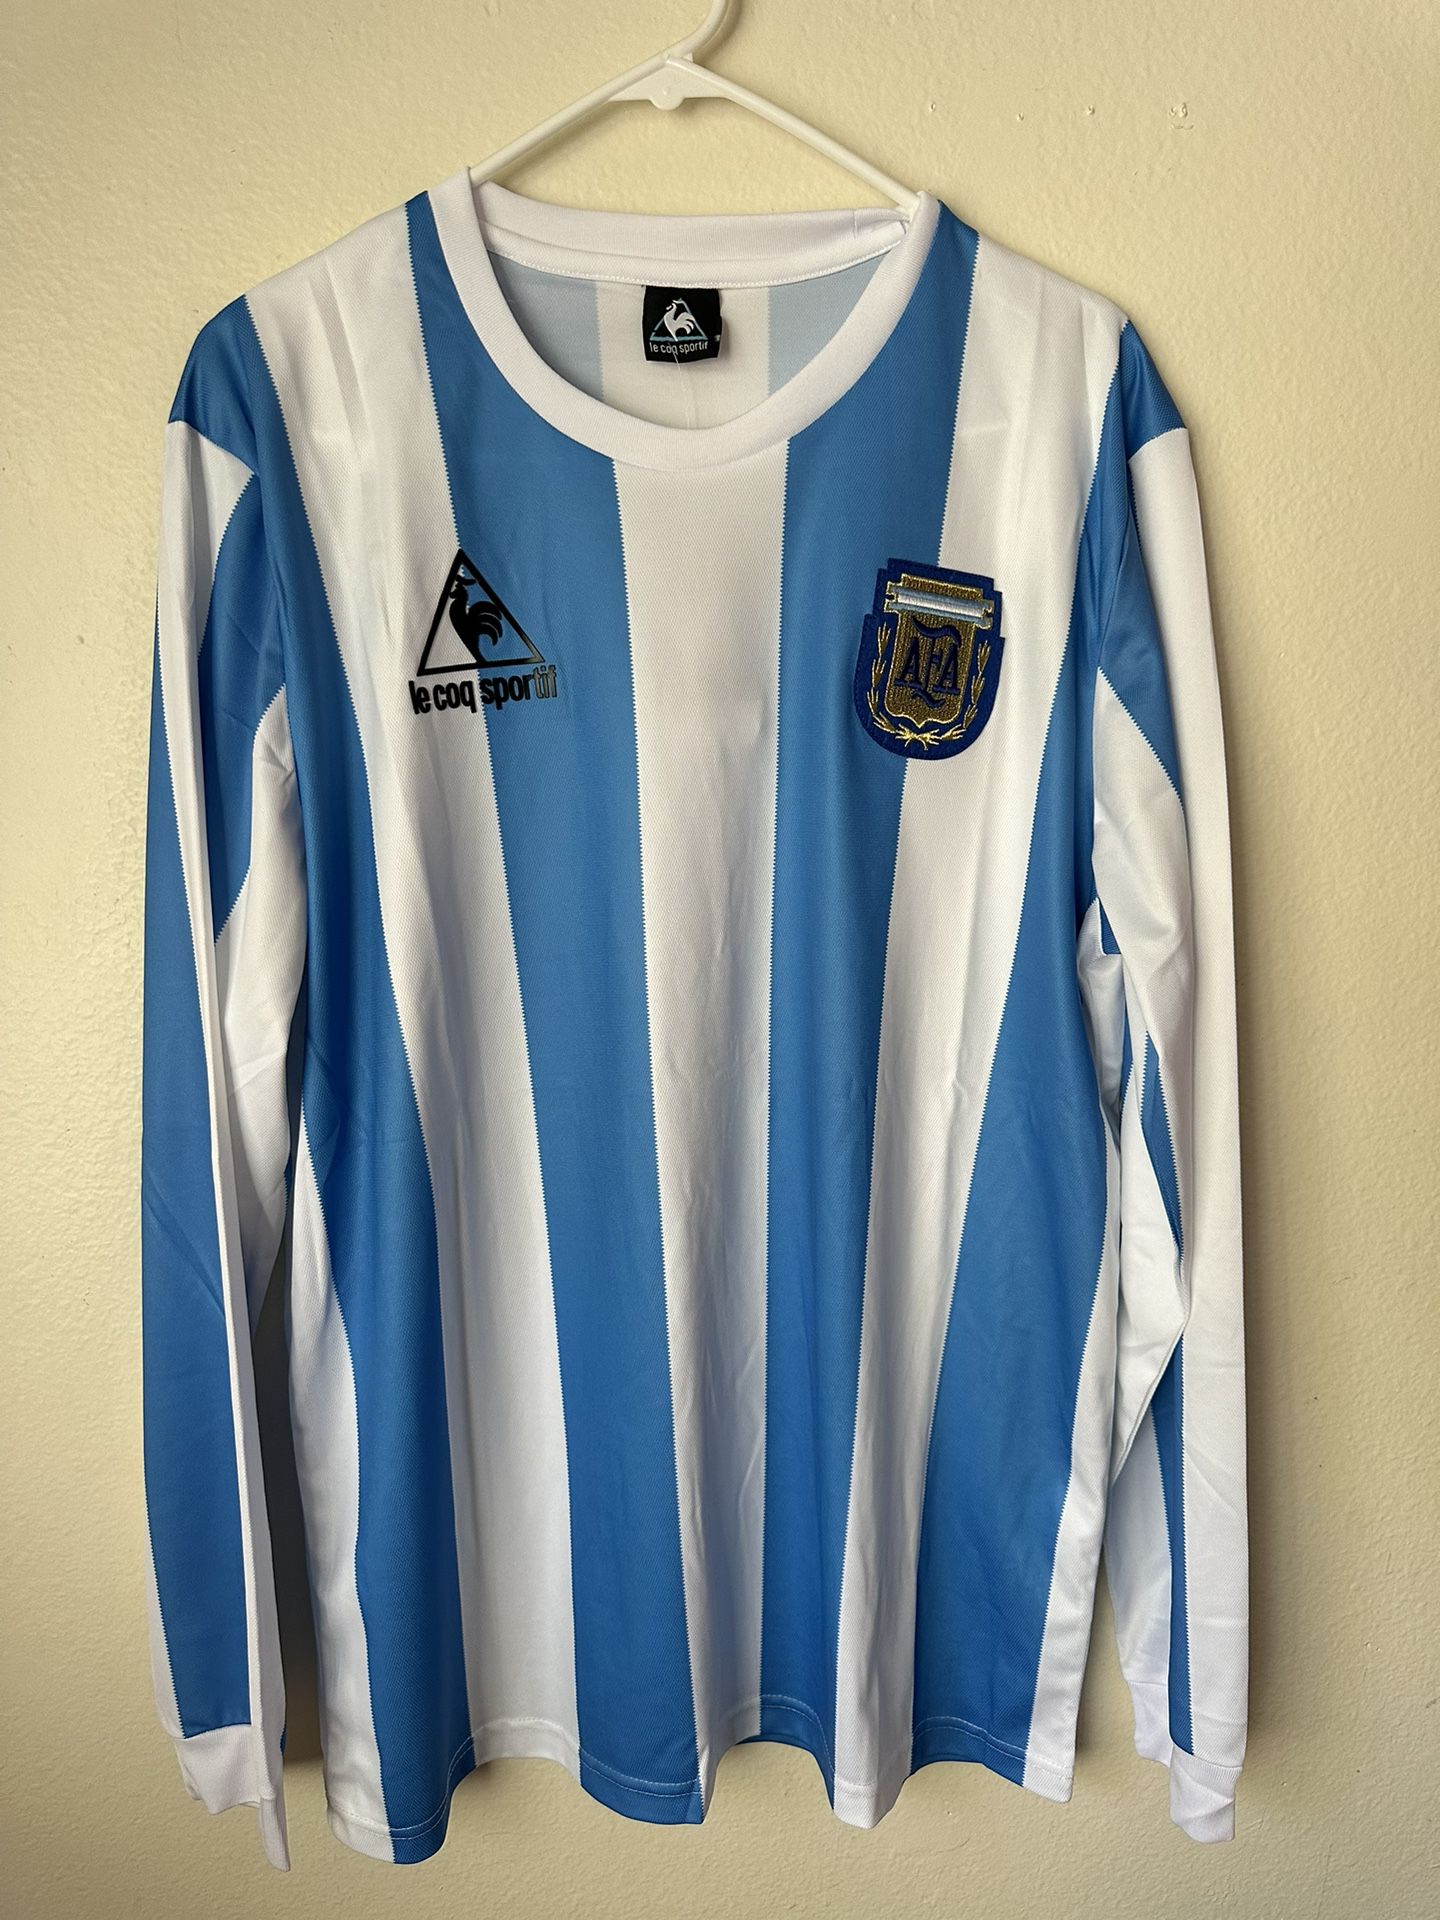 Maradona Argentina Soccer Jersey